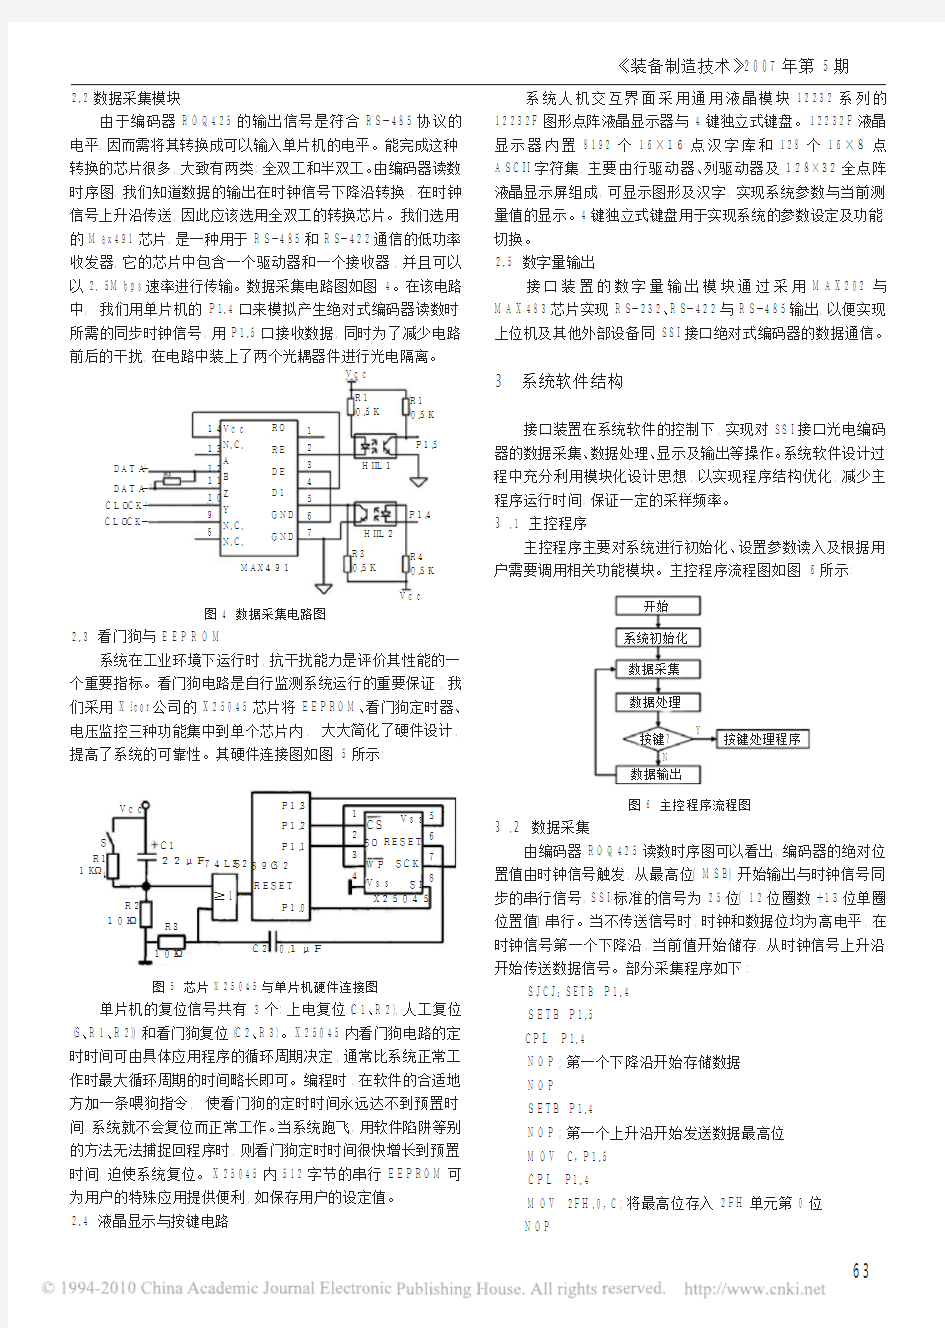 绝对式光电编码器的接口装置设计与应用